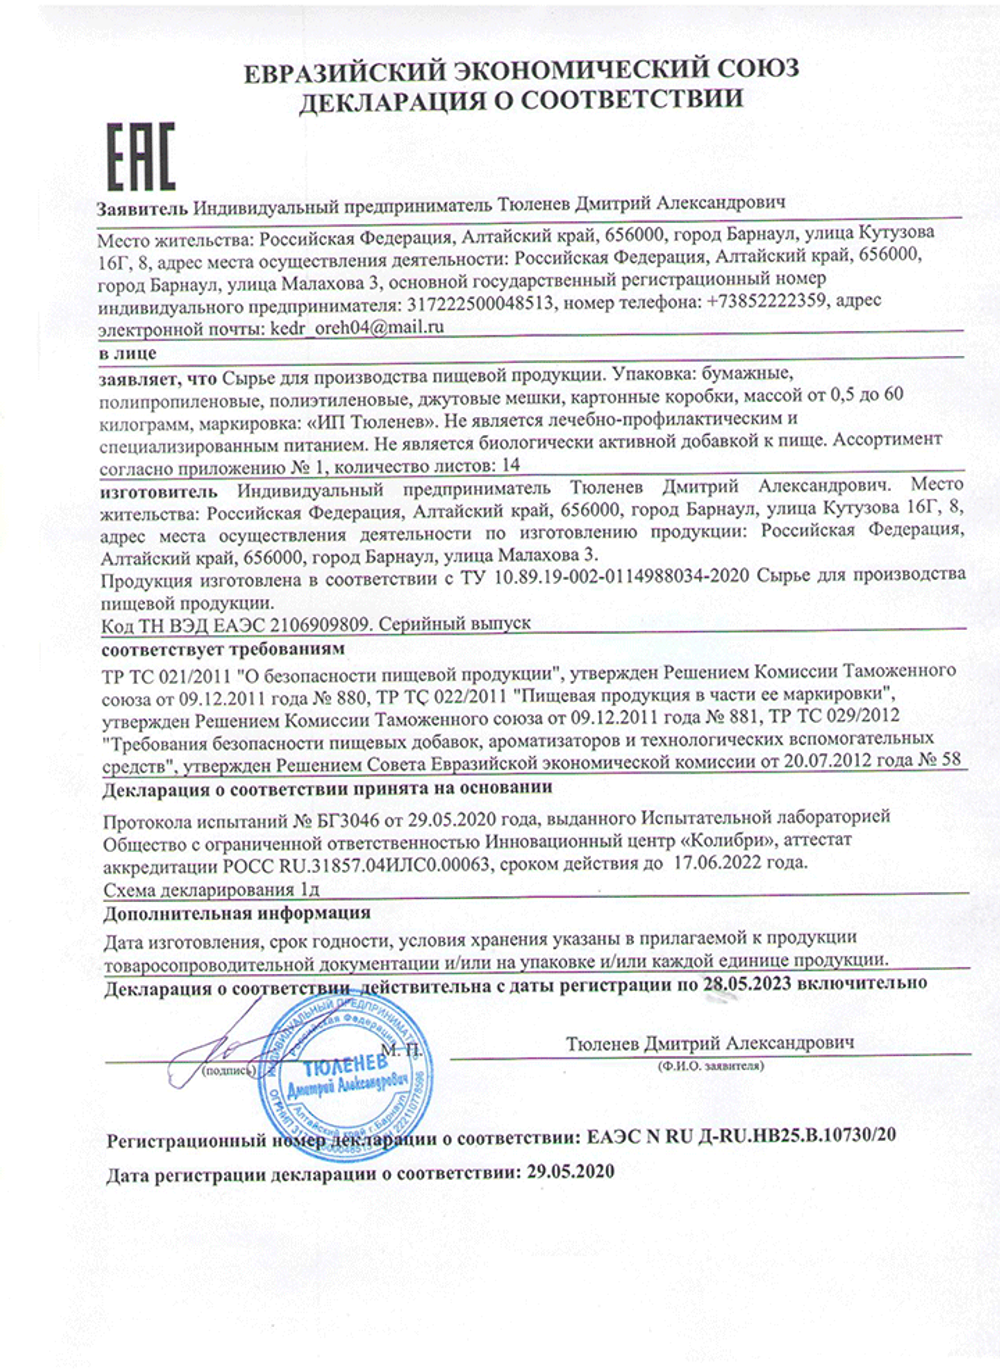 Изображение сертификата соответствия гармалы-adonnis.ru